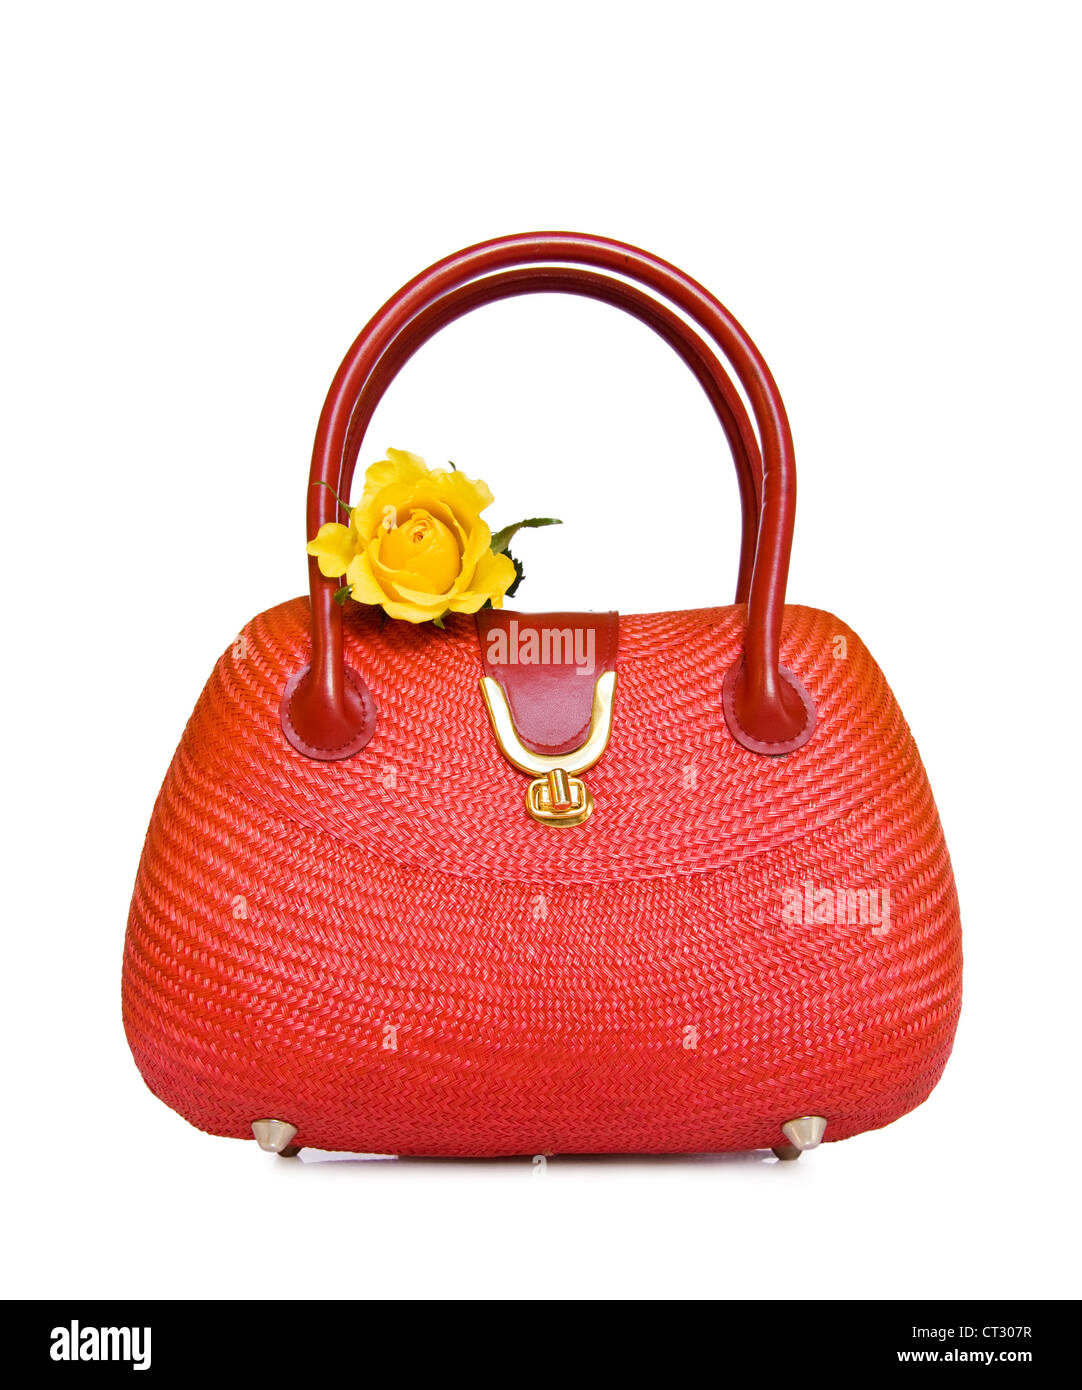 Vintage rosso borsetta di paglia con rosa gialla. Isolato su sfondo bianco. Foto Stock